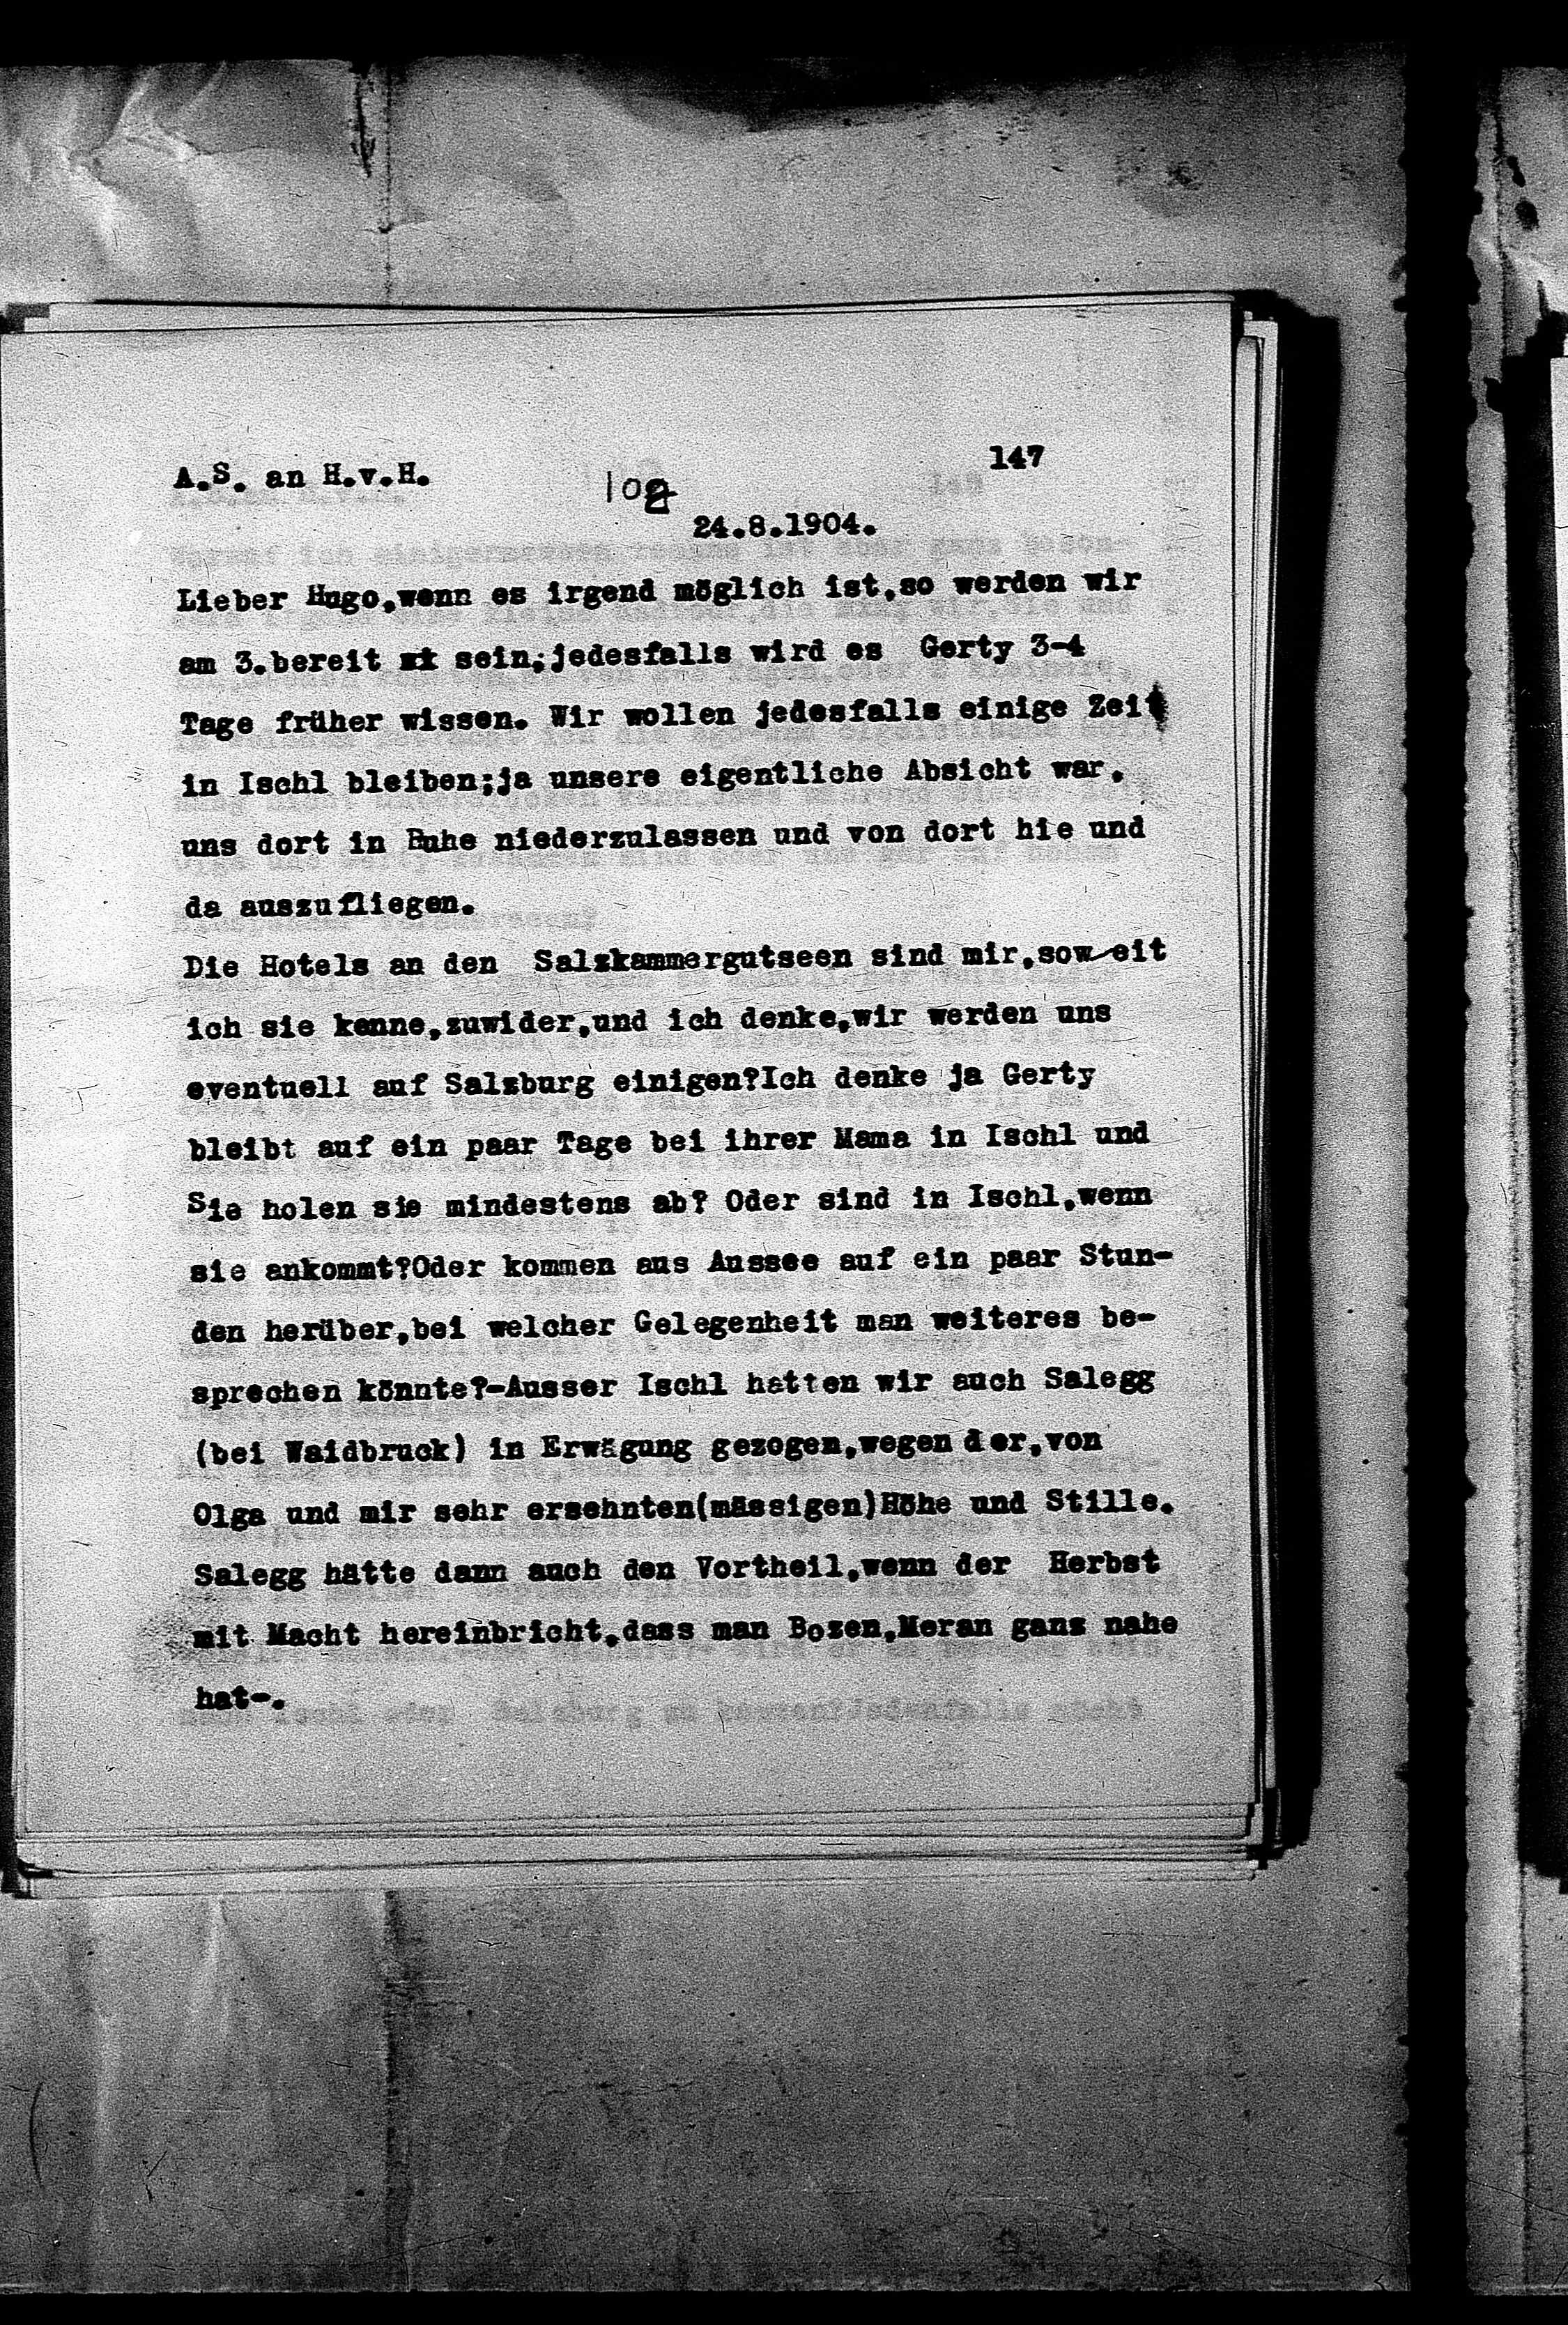 Vorschaubild für Hofmannsthal, Hugo von_AS an HvH Abschrift, HvH an AS, Originale (Mikrofilm 38), Seite 153